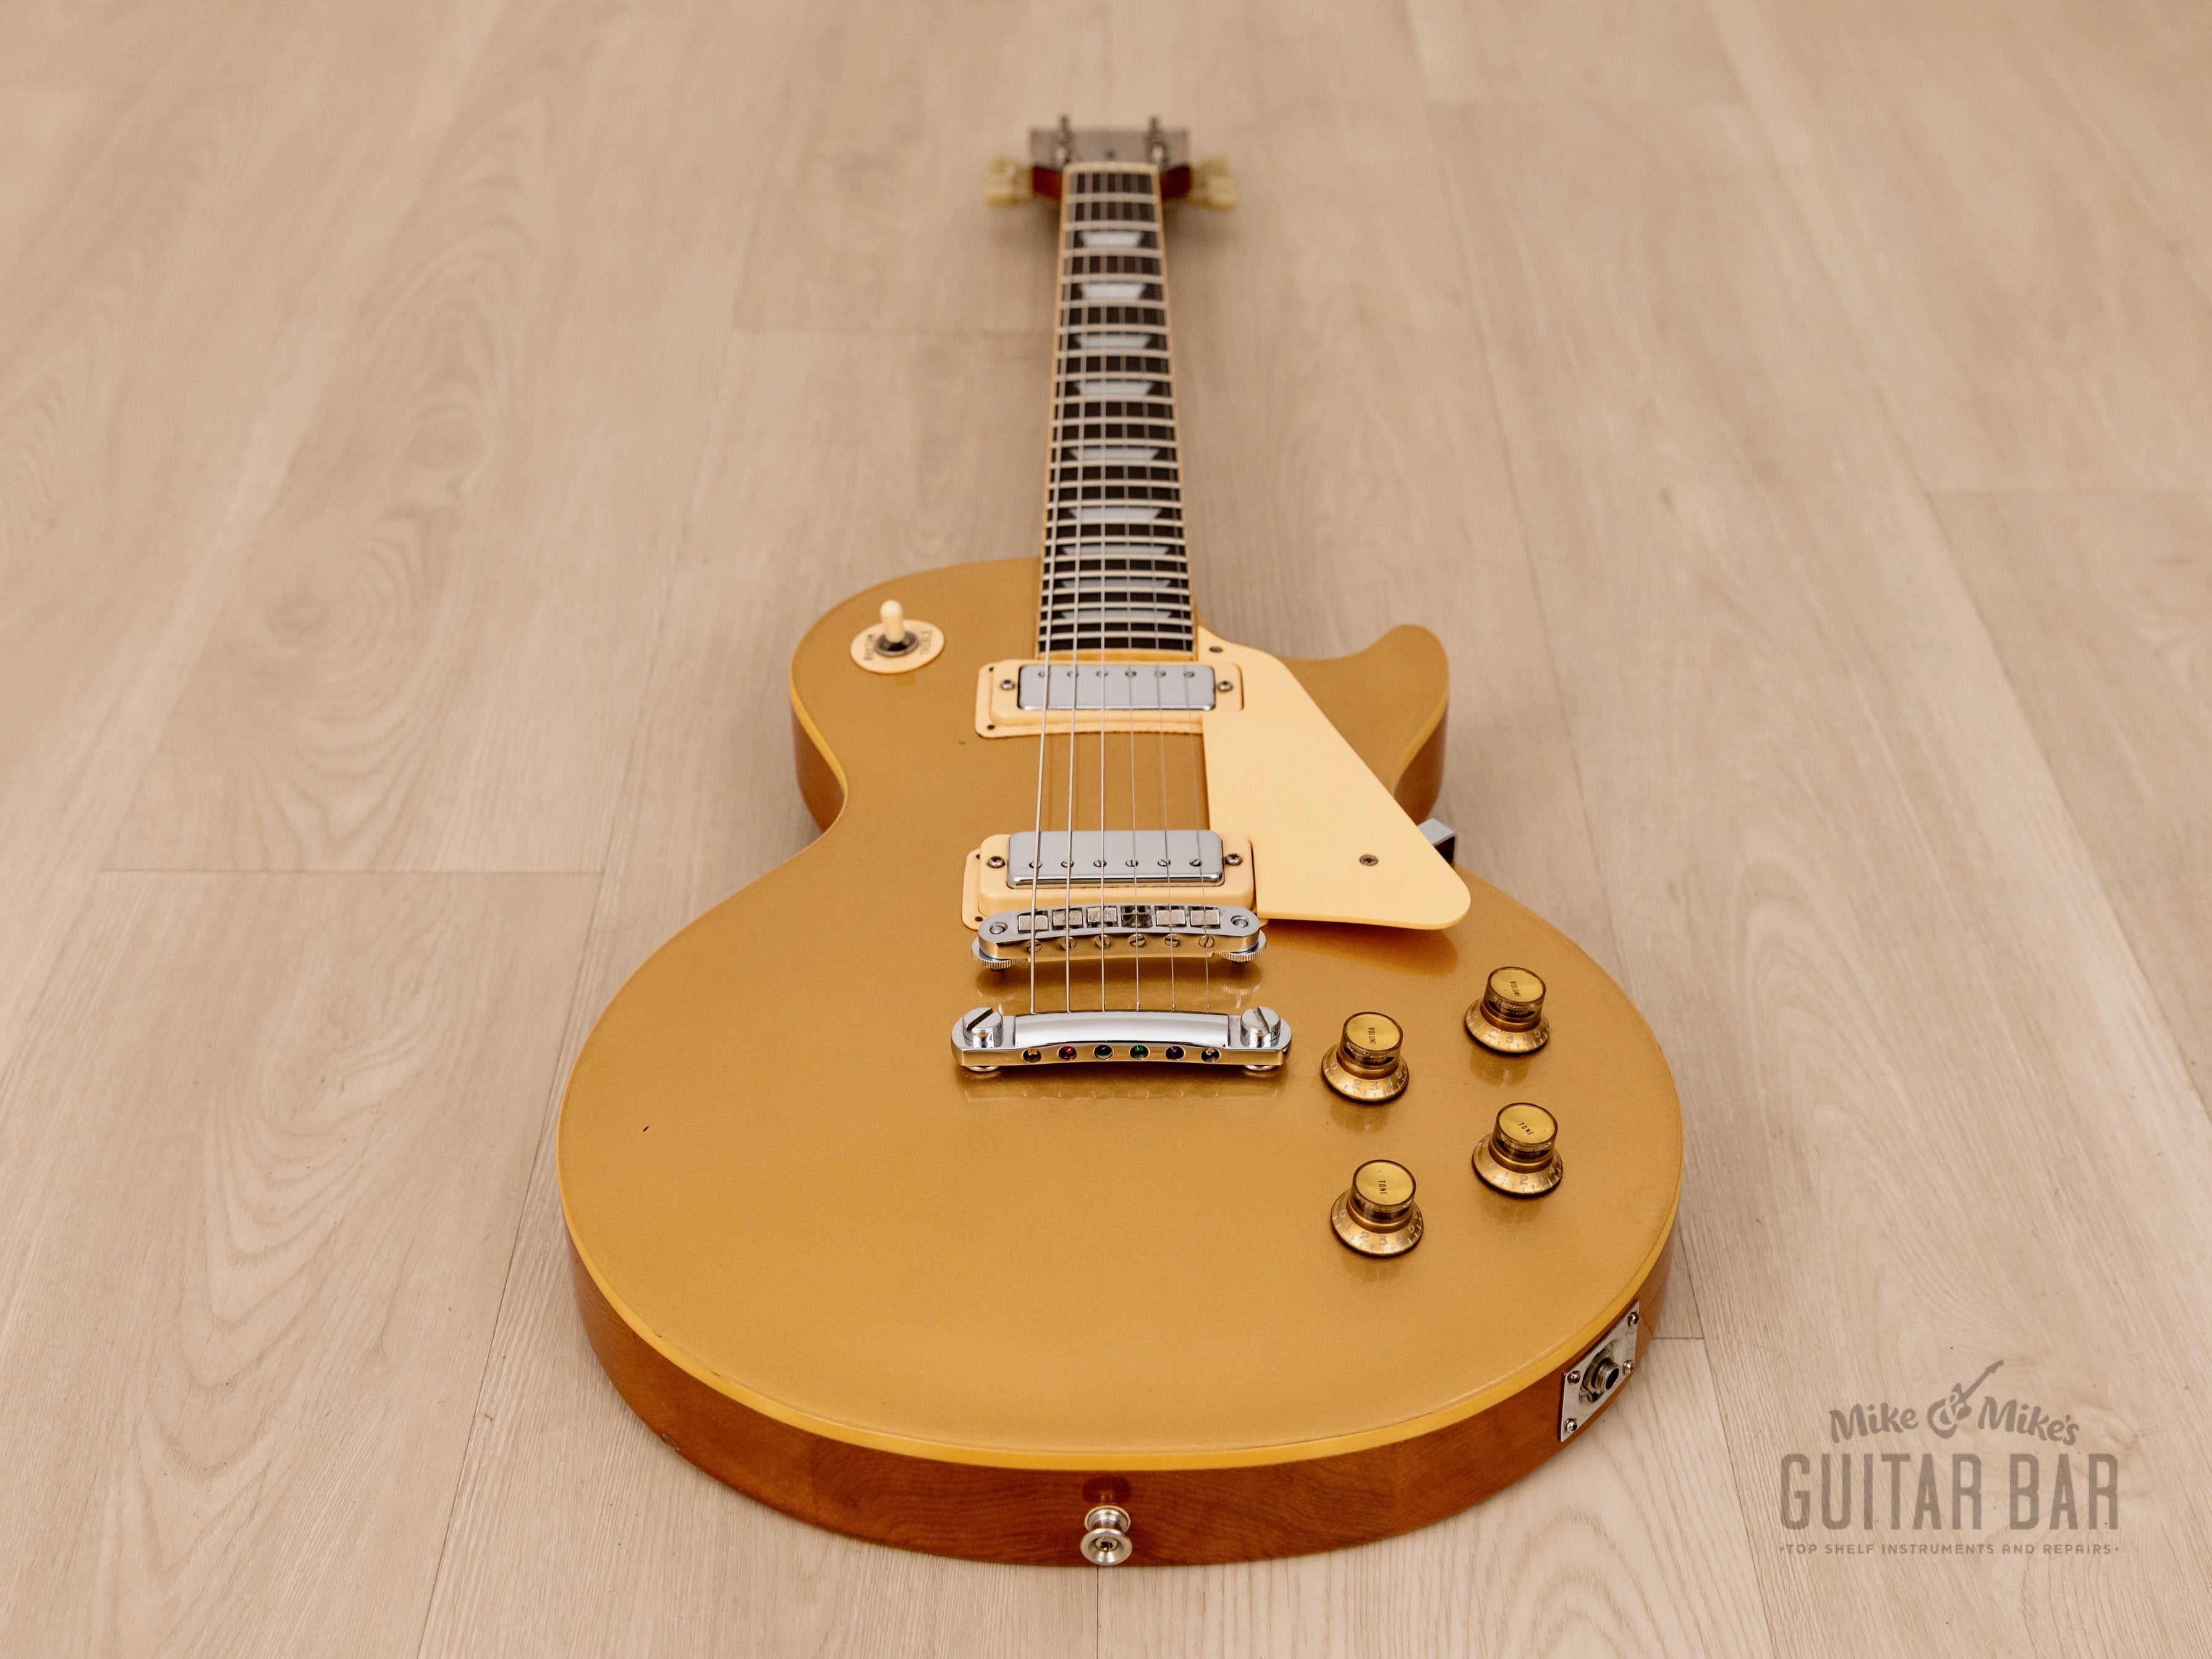 1978 Greco EG600GS Goldtop Vintage Guitar w/ Mini Humbuckers, Japan Fujigen